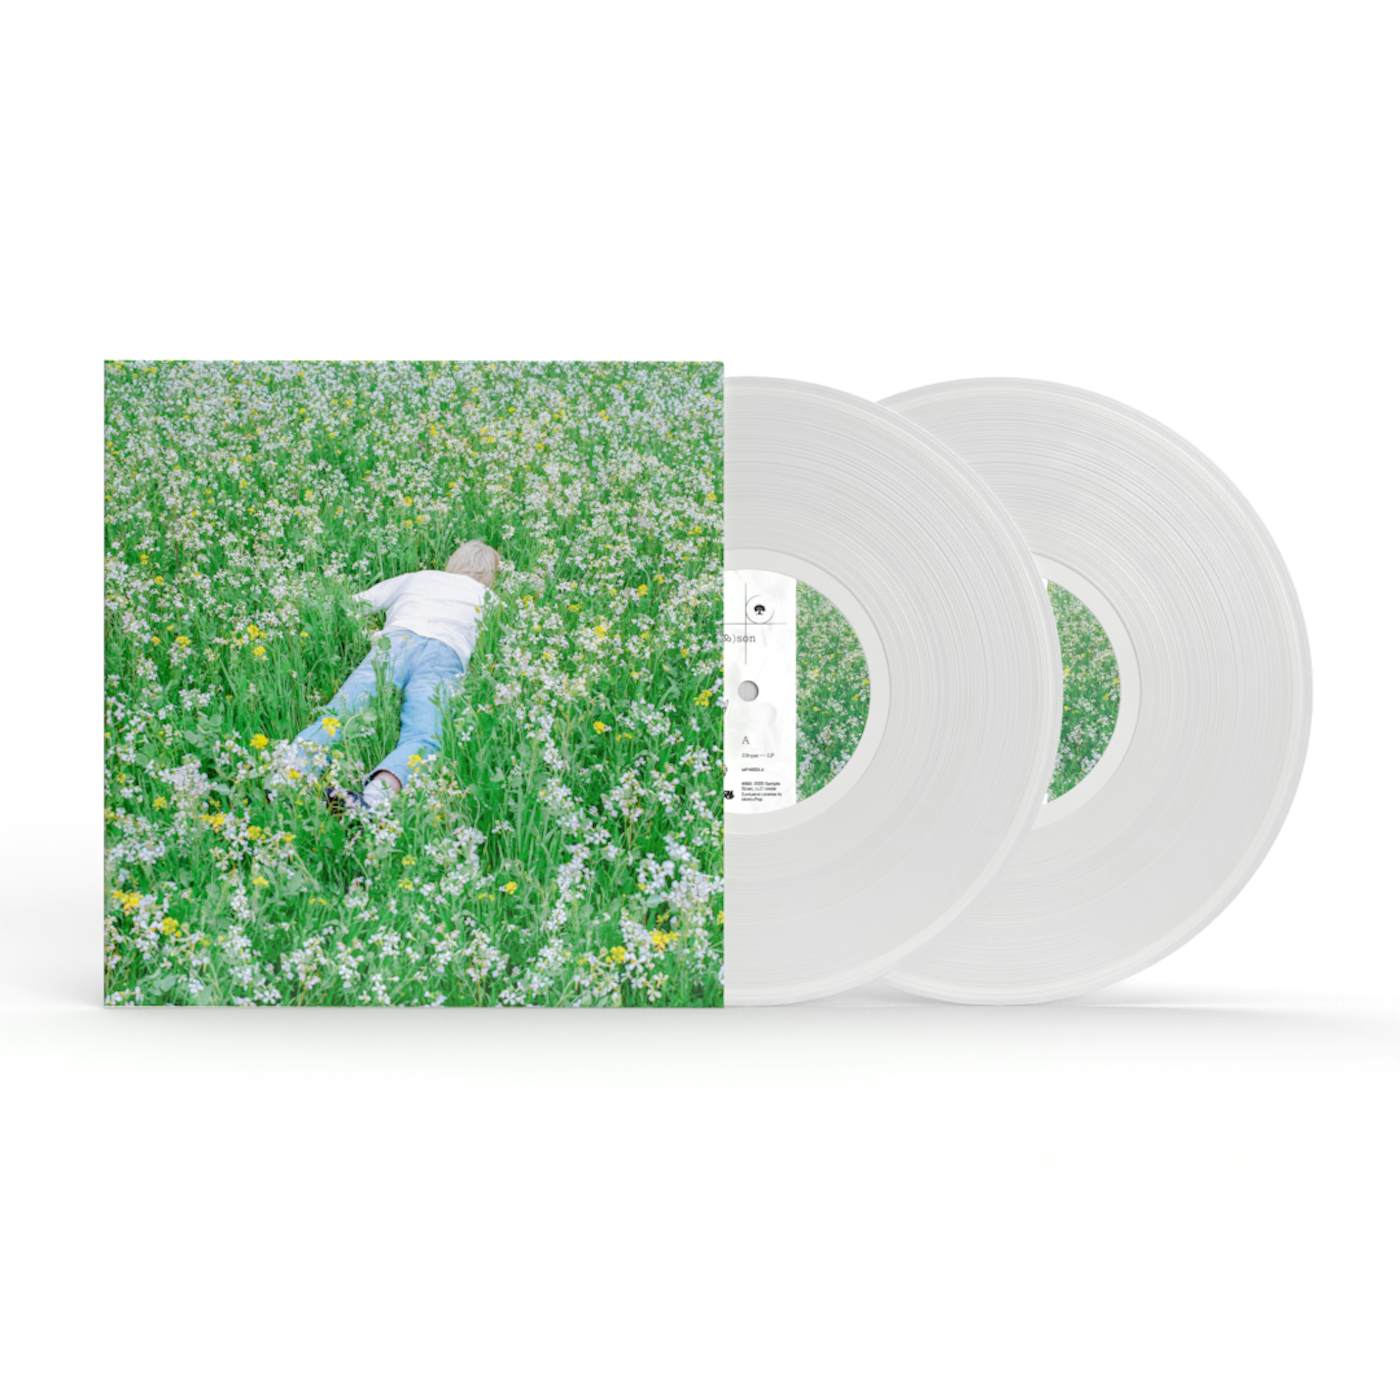 Porter Robinson nurture 2lp standard vinyl + digital album